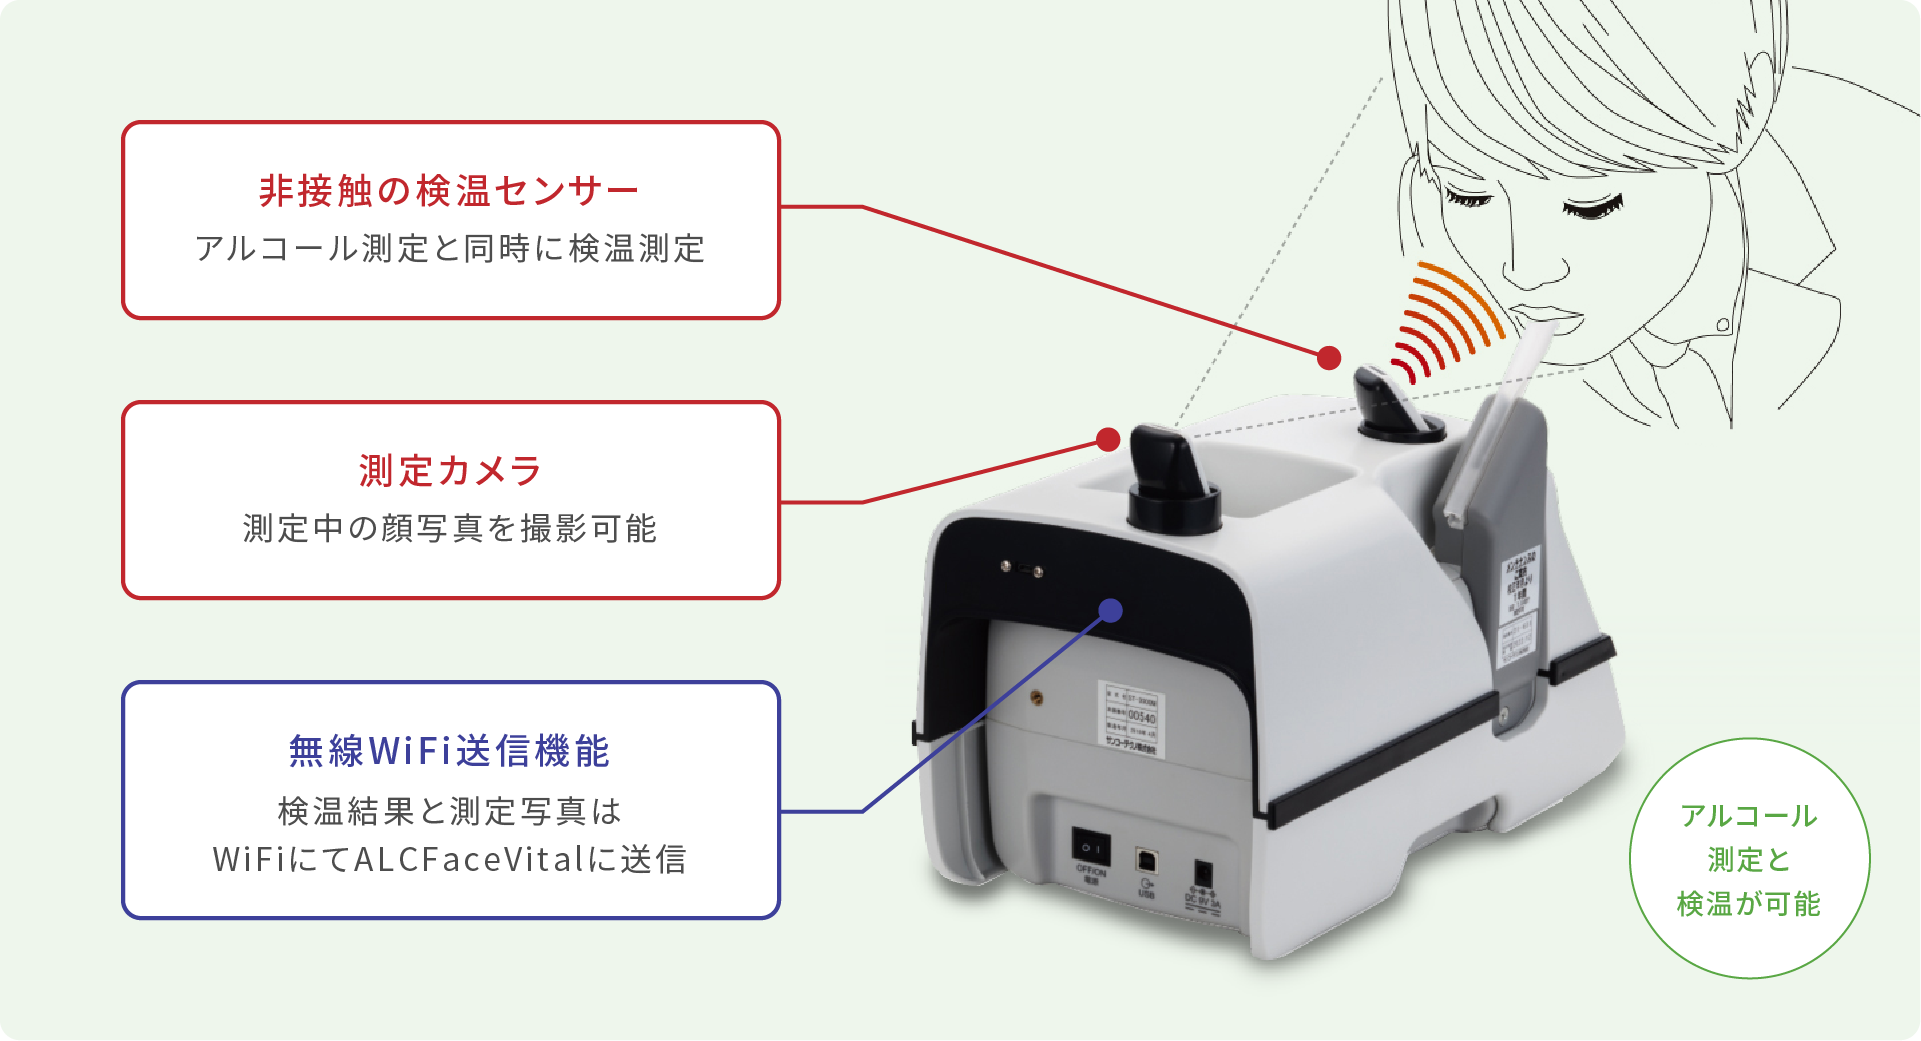 ①非接触の検温センサー②測定カメラ③無線WiFi送信機能